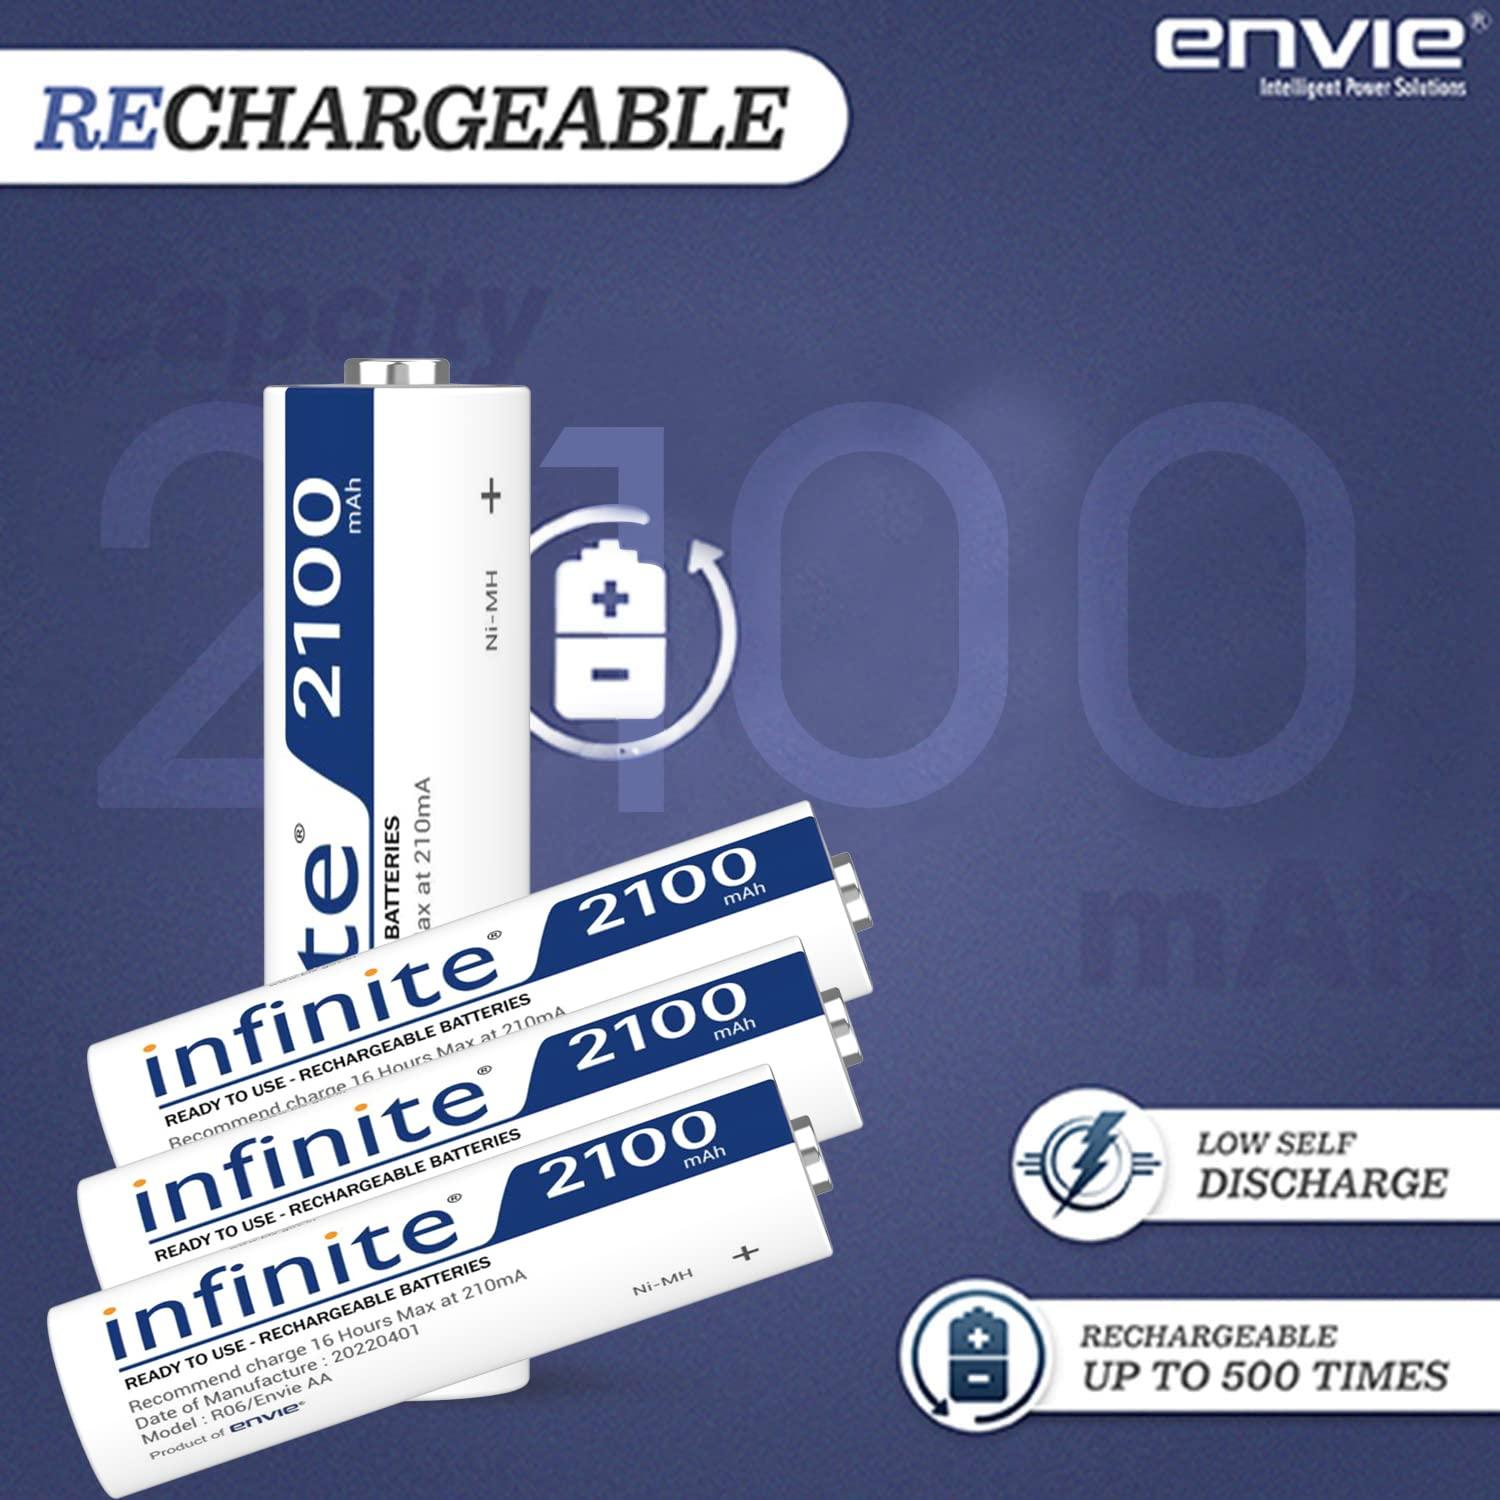 ENVIE (AA2100RTU4PL) Infinite AA Rechargeable Batteries | High-Capacity Ni-MH | 2100 mAh | Low Self Discharge | (Pack of 4) - Digitek